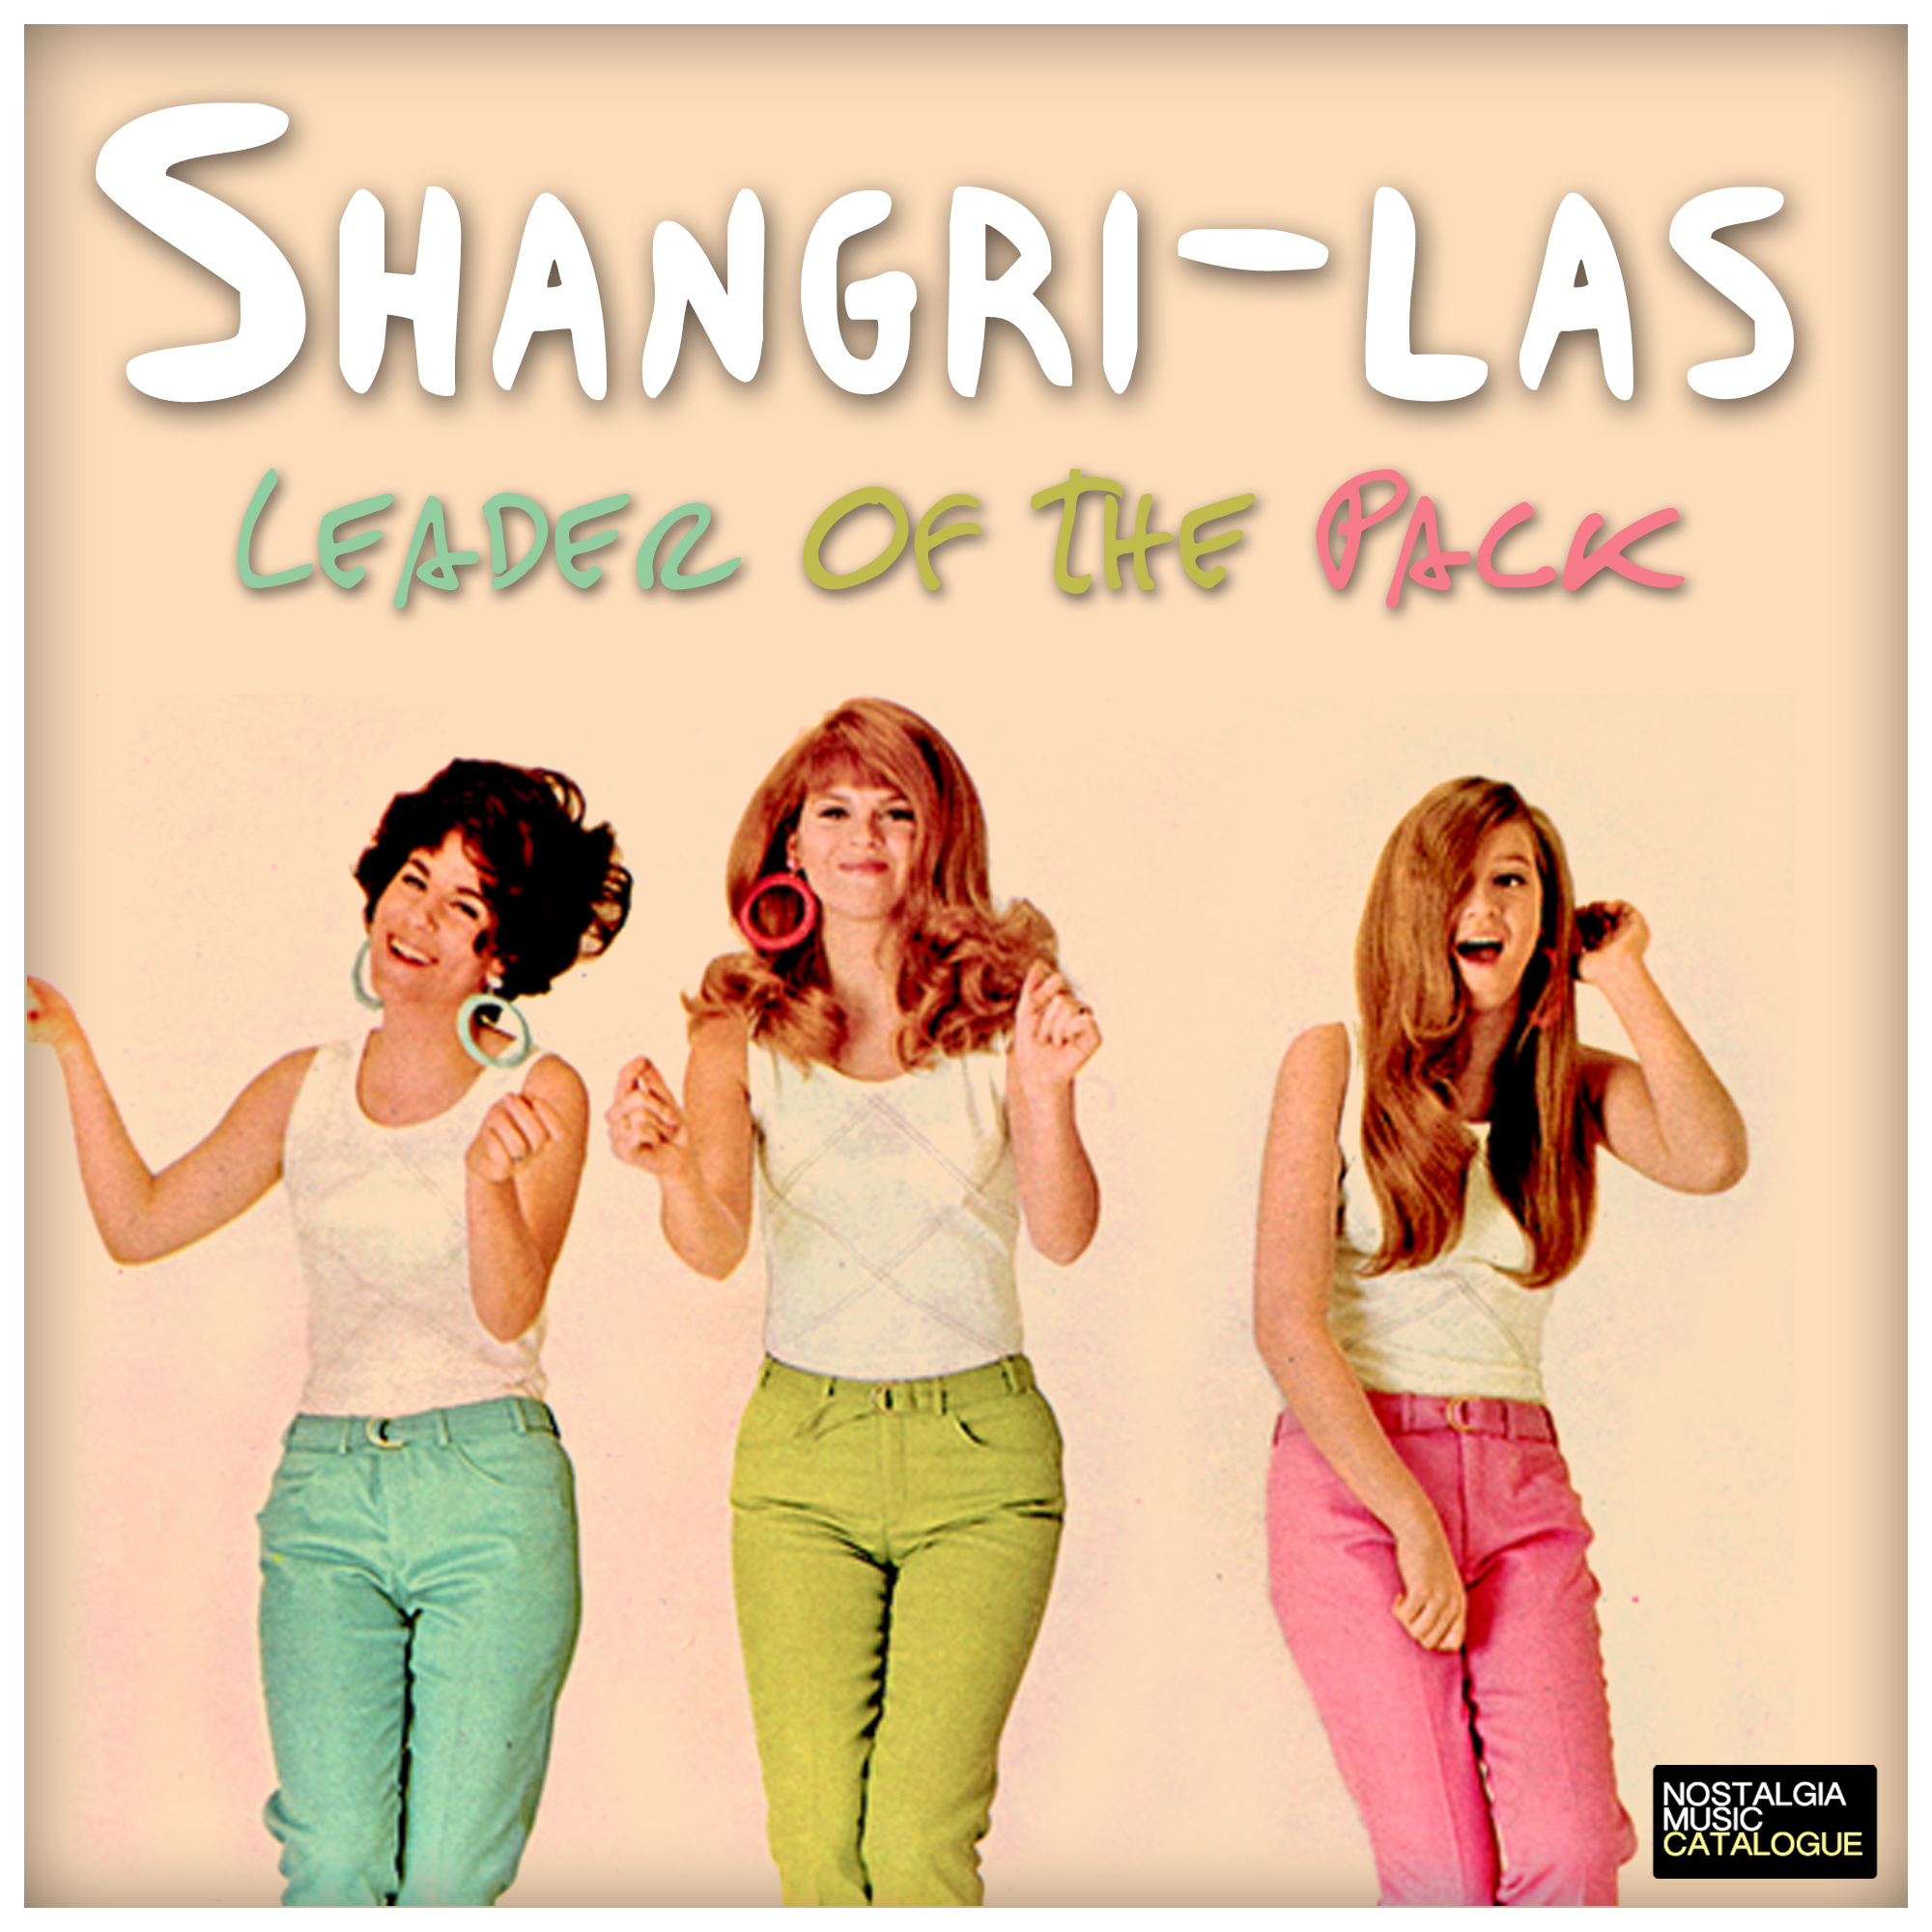  Shangri-las - Leader of The Pack 